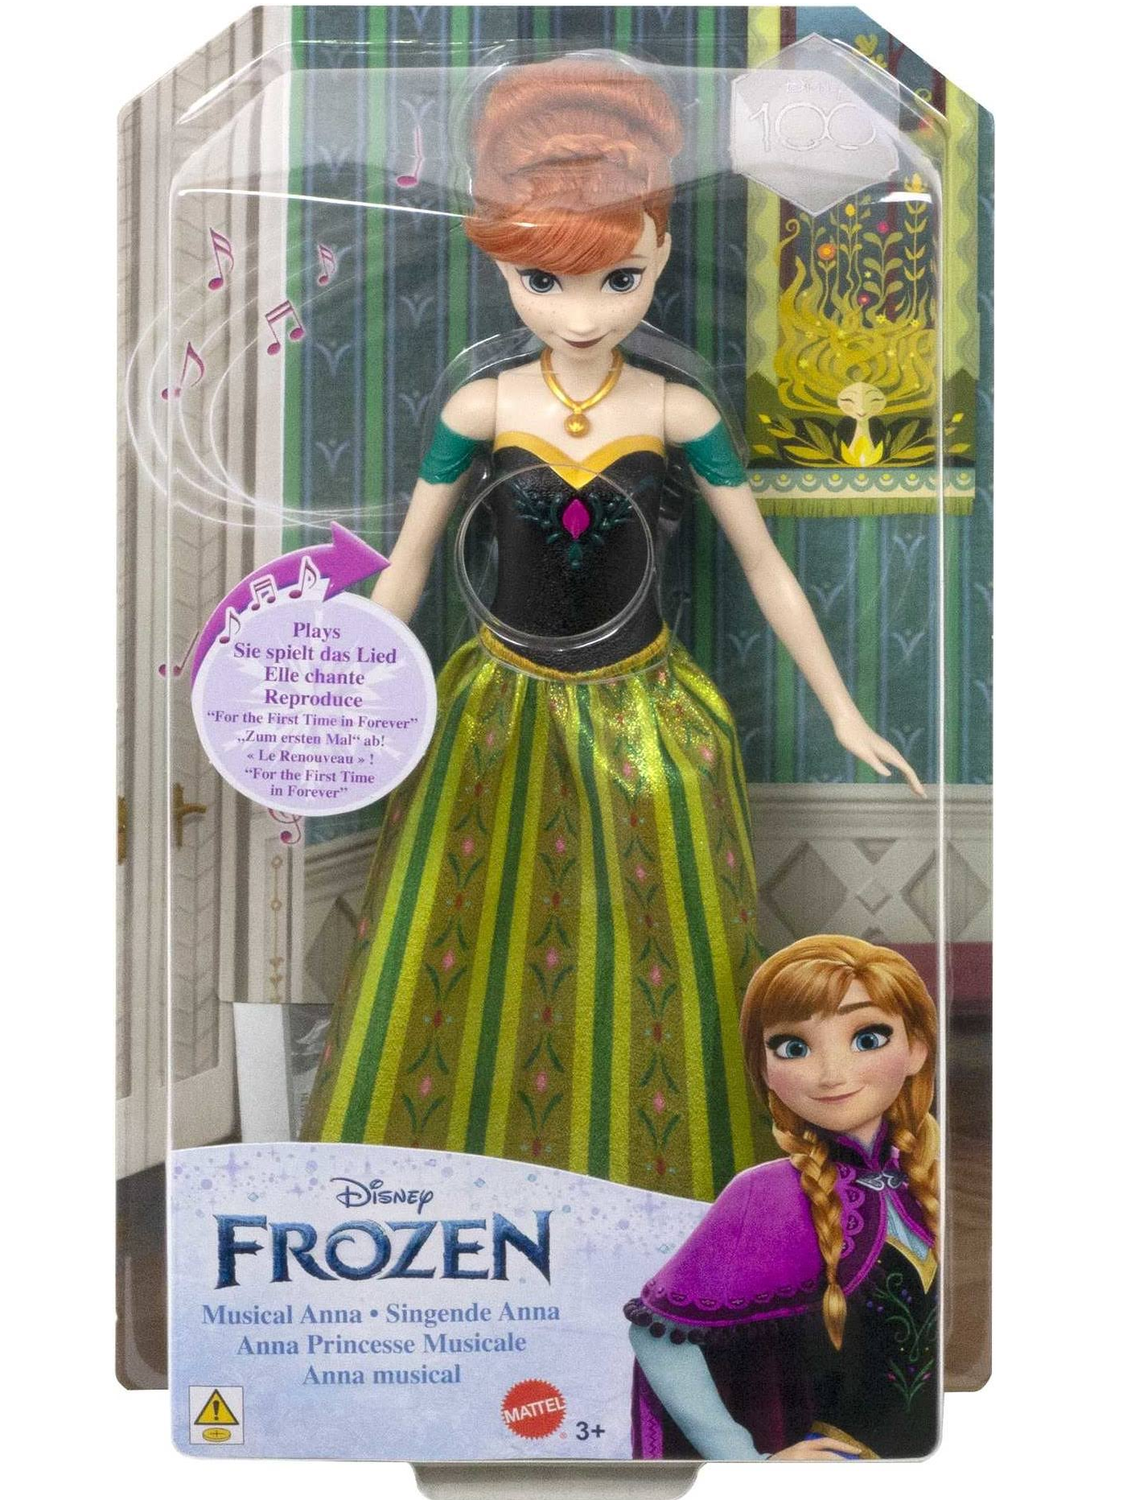 Boneca Frozen Elsa Musical - Mattel : : Brinquedos e Jogos